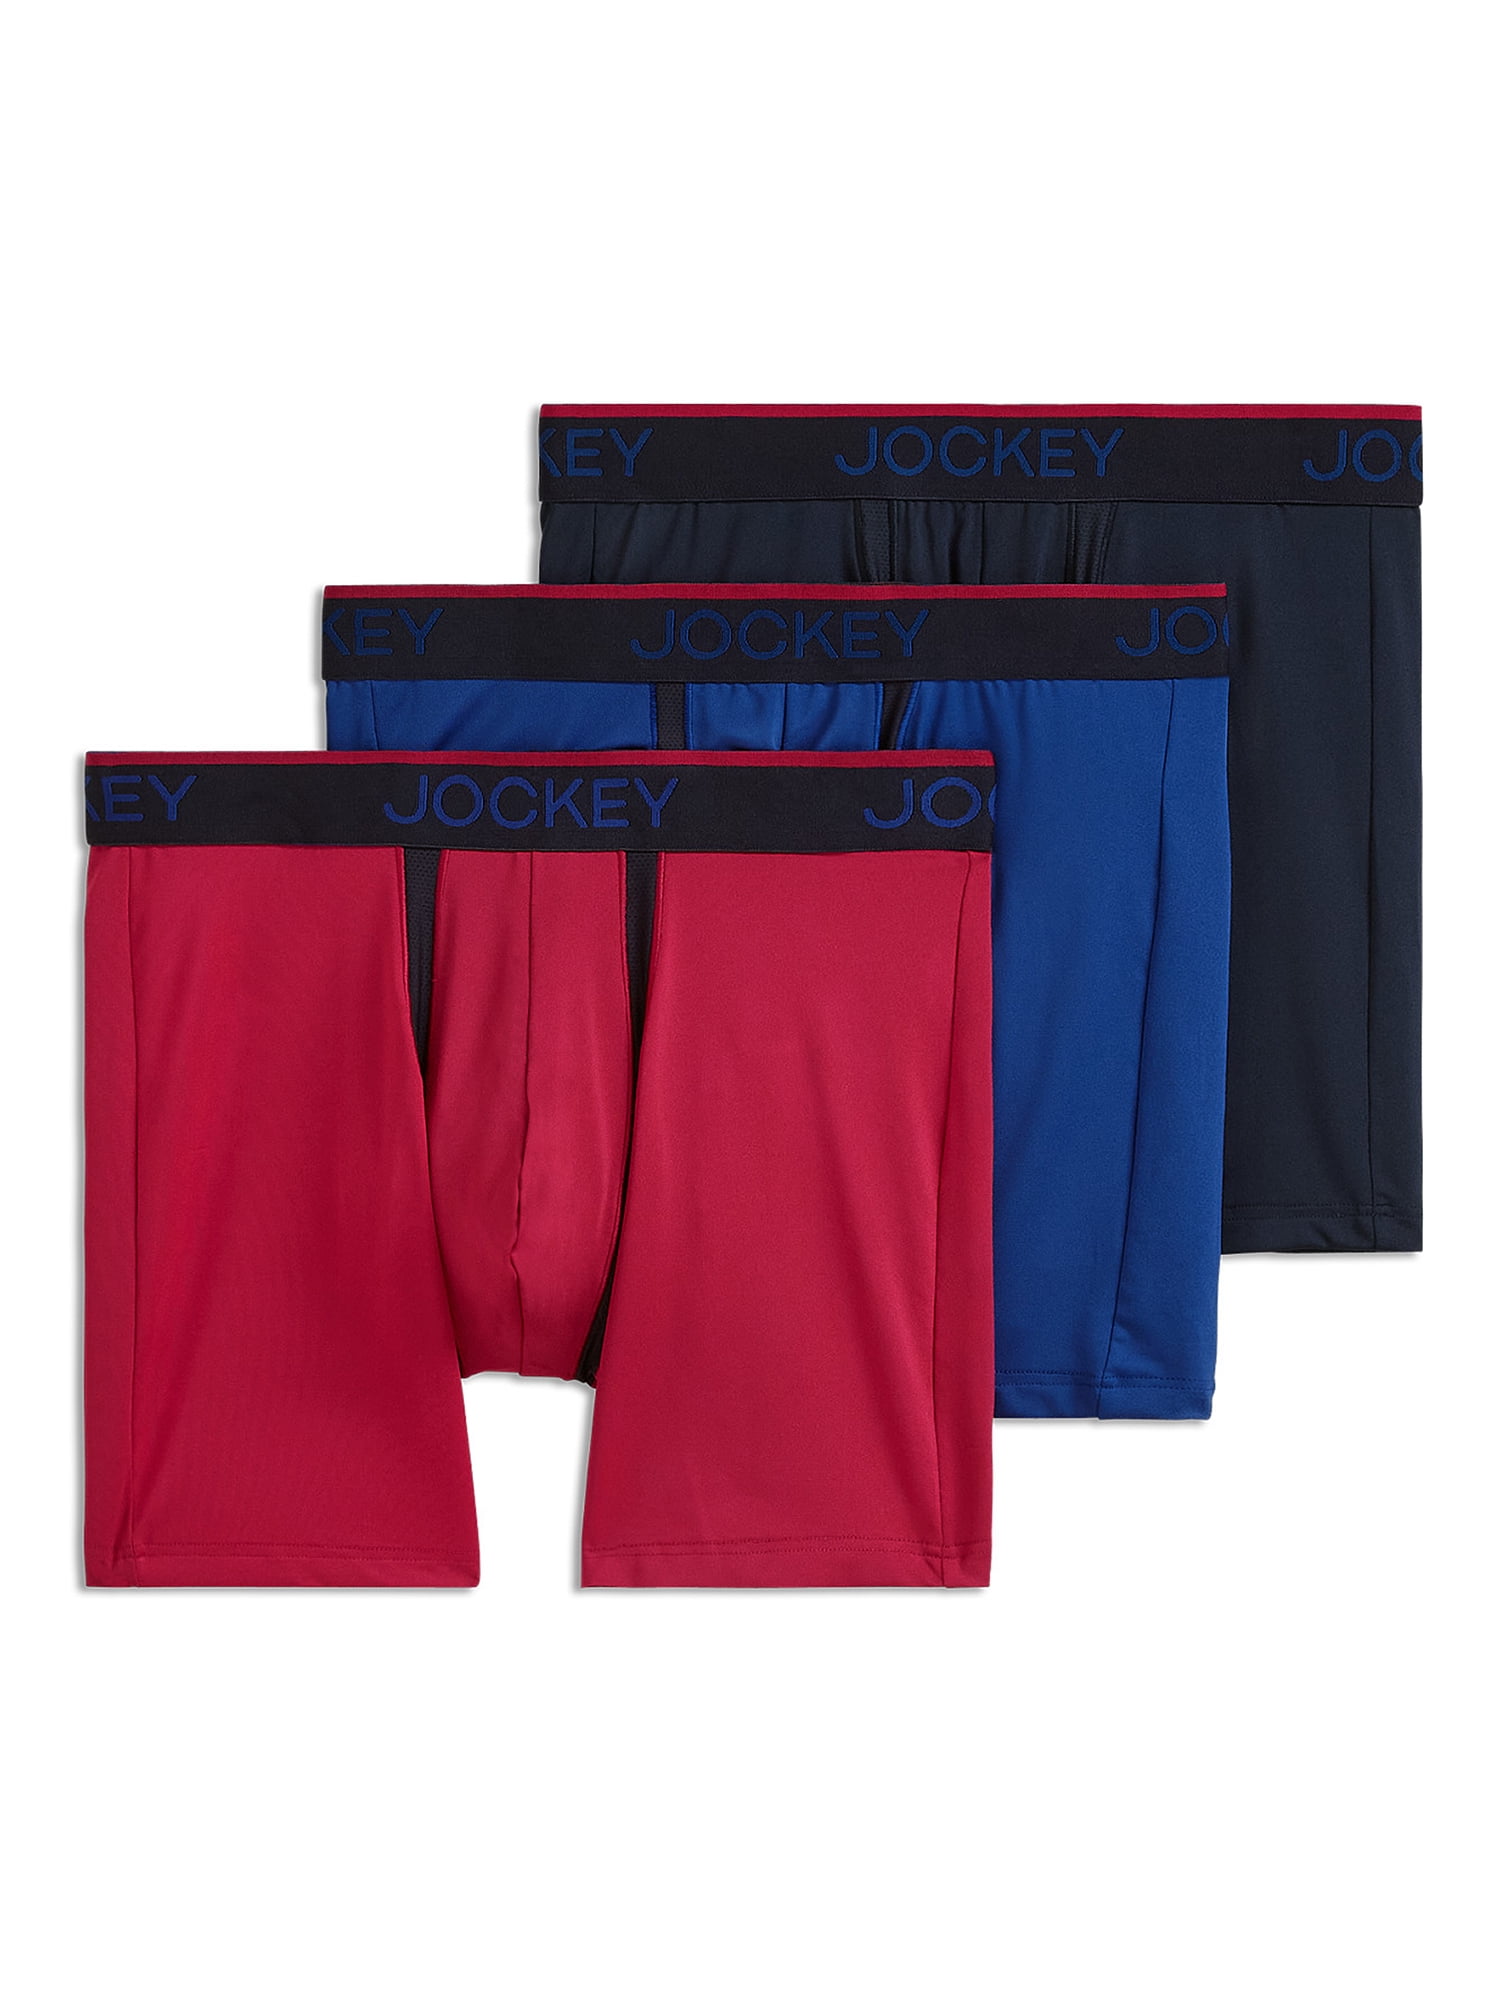 Jockey Essentials® Men's Zero Chafe Pouch Boxer Brief, 6 Inseam, Pack of 3,  Separation Underwear, Comfort Workout Underwear, Sizes Small, Medium,  Large, Extra Large, 2XL, 3XL, 6849 